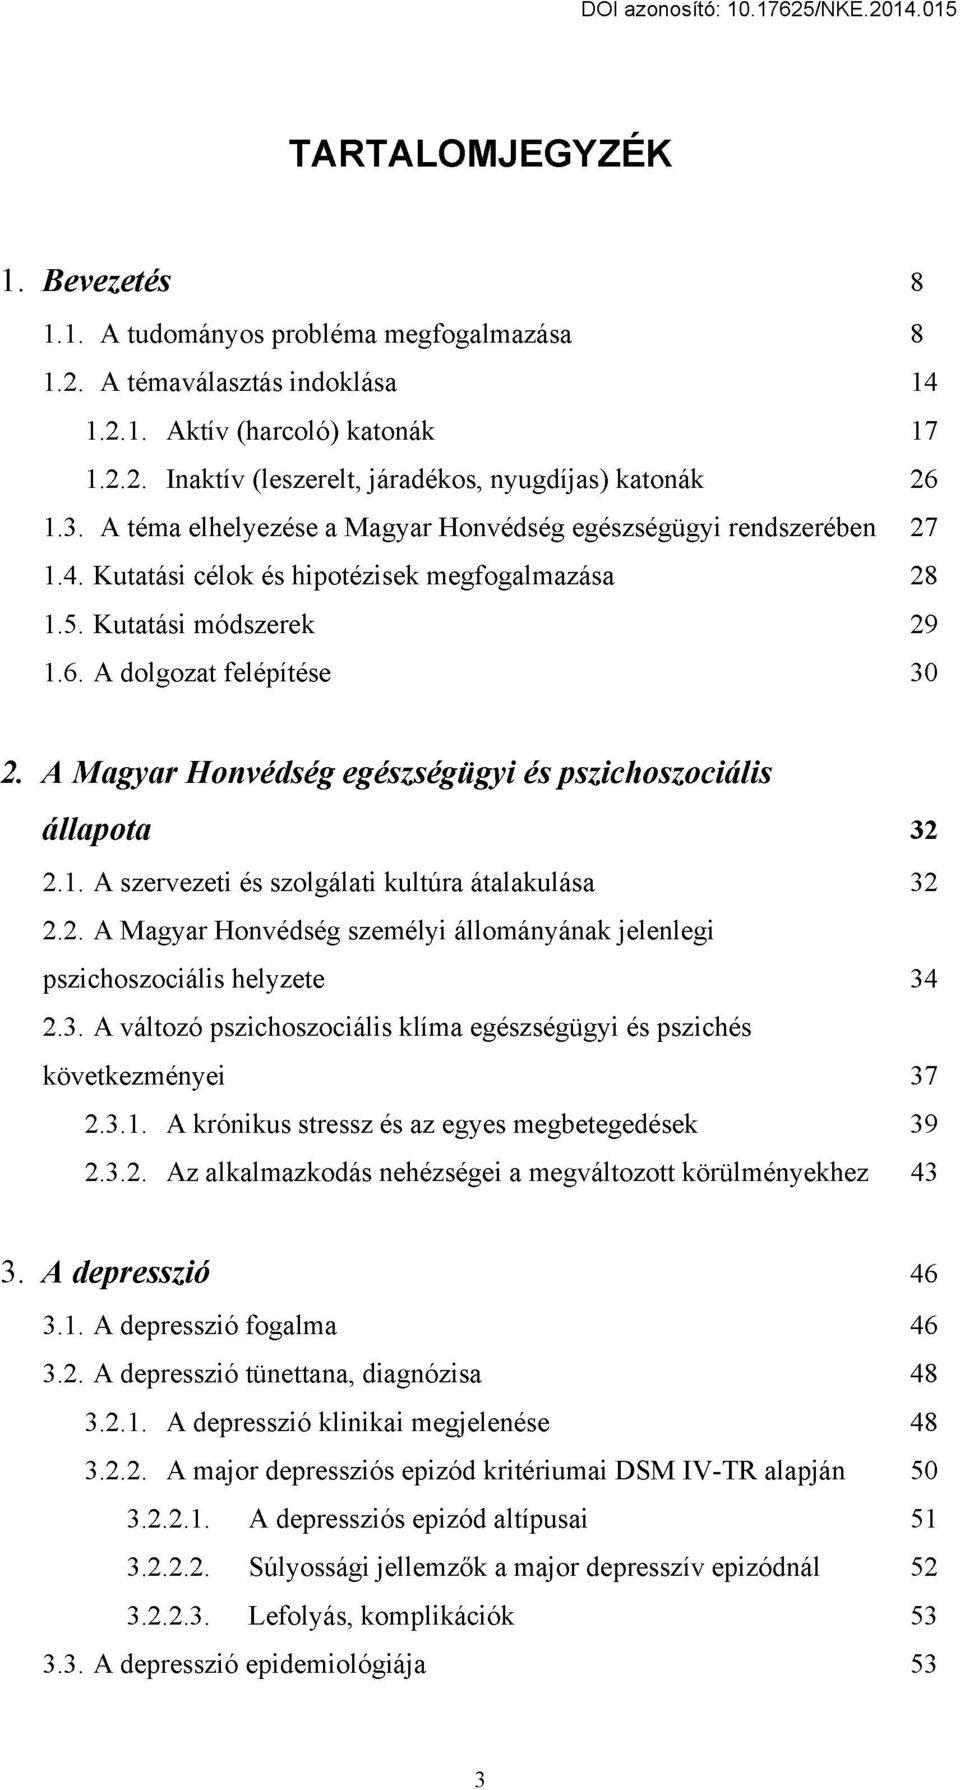 A Magyar Honvédség egészségügyi és pszichoszociális állapota 32 2.1. A szervezeti és szolgálati kultúra átalakulása 32 2.2. A Magyar Honvédség személyi állományának jelenlegi pszichoszociális helyzete 34 2.